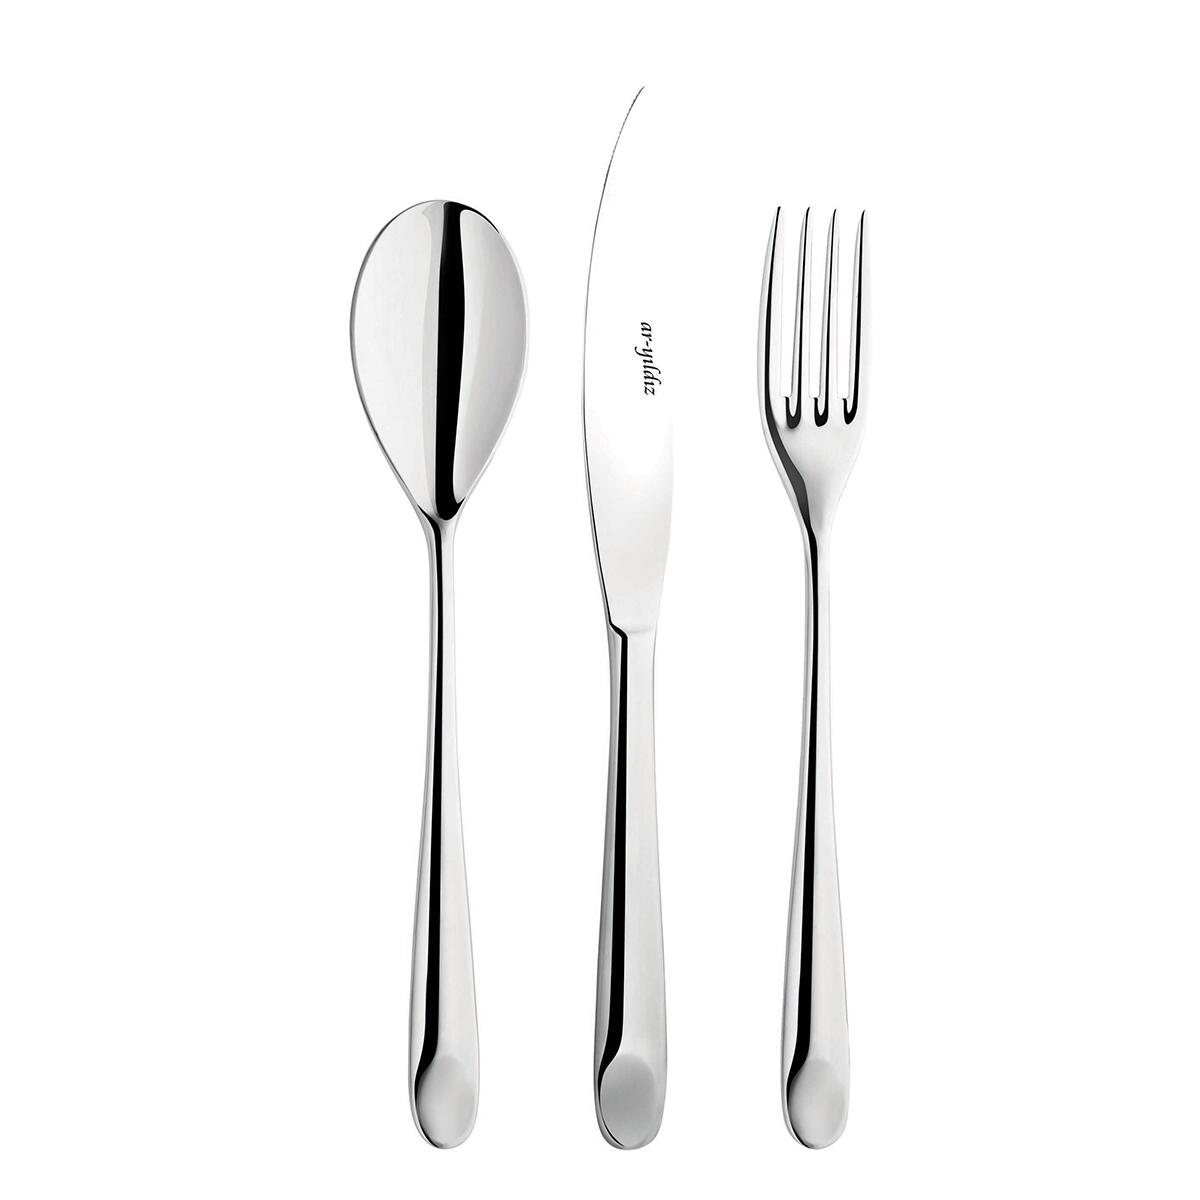 Aryıldız Likya Fork Spoon Knife Set 24 pcs